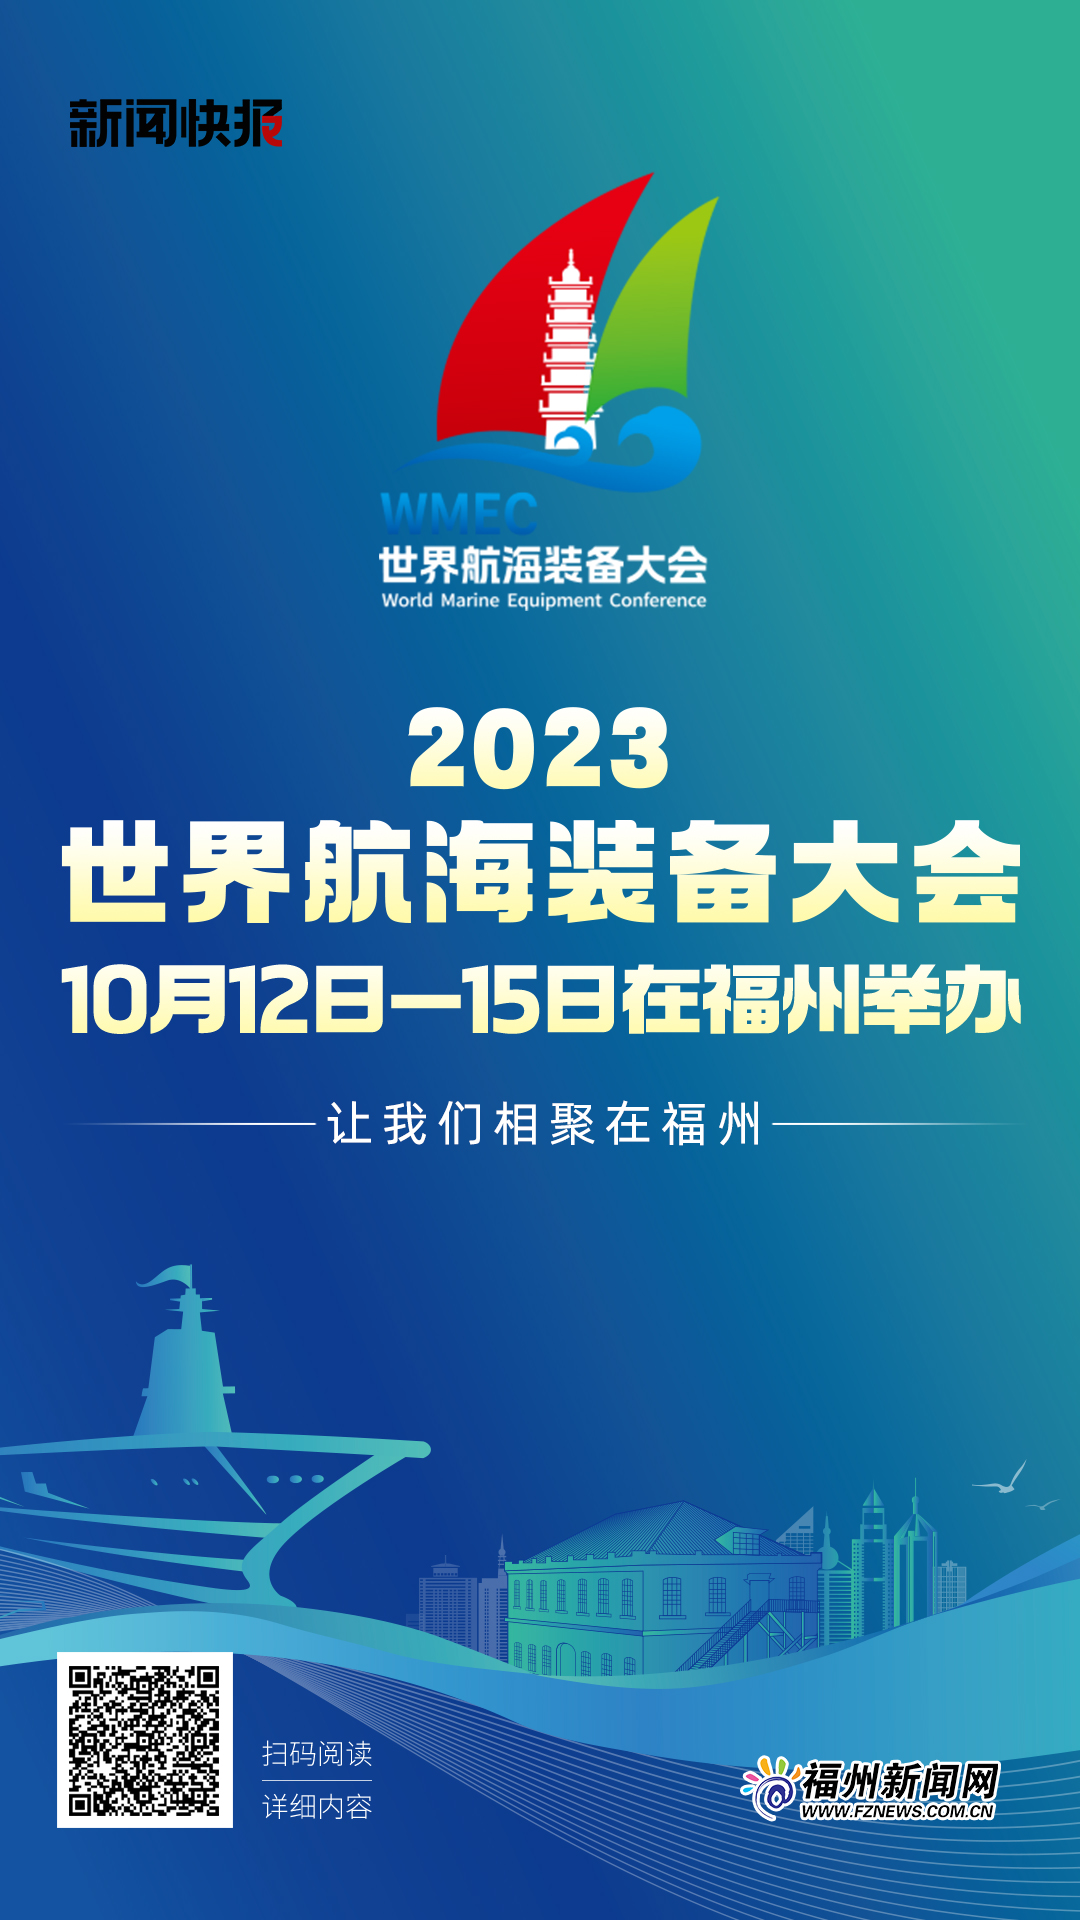 2023世界航海装备大会将于10月12日至15日在福州举办